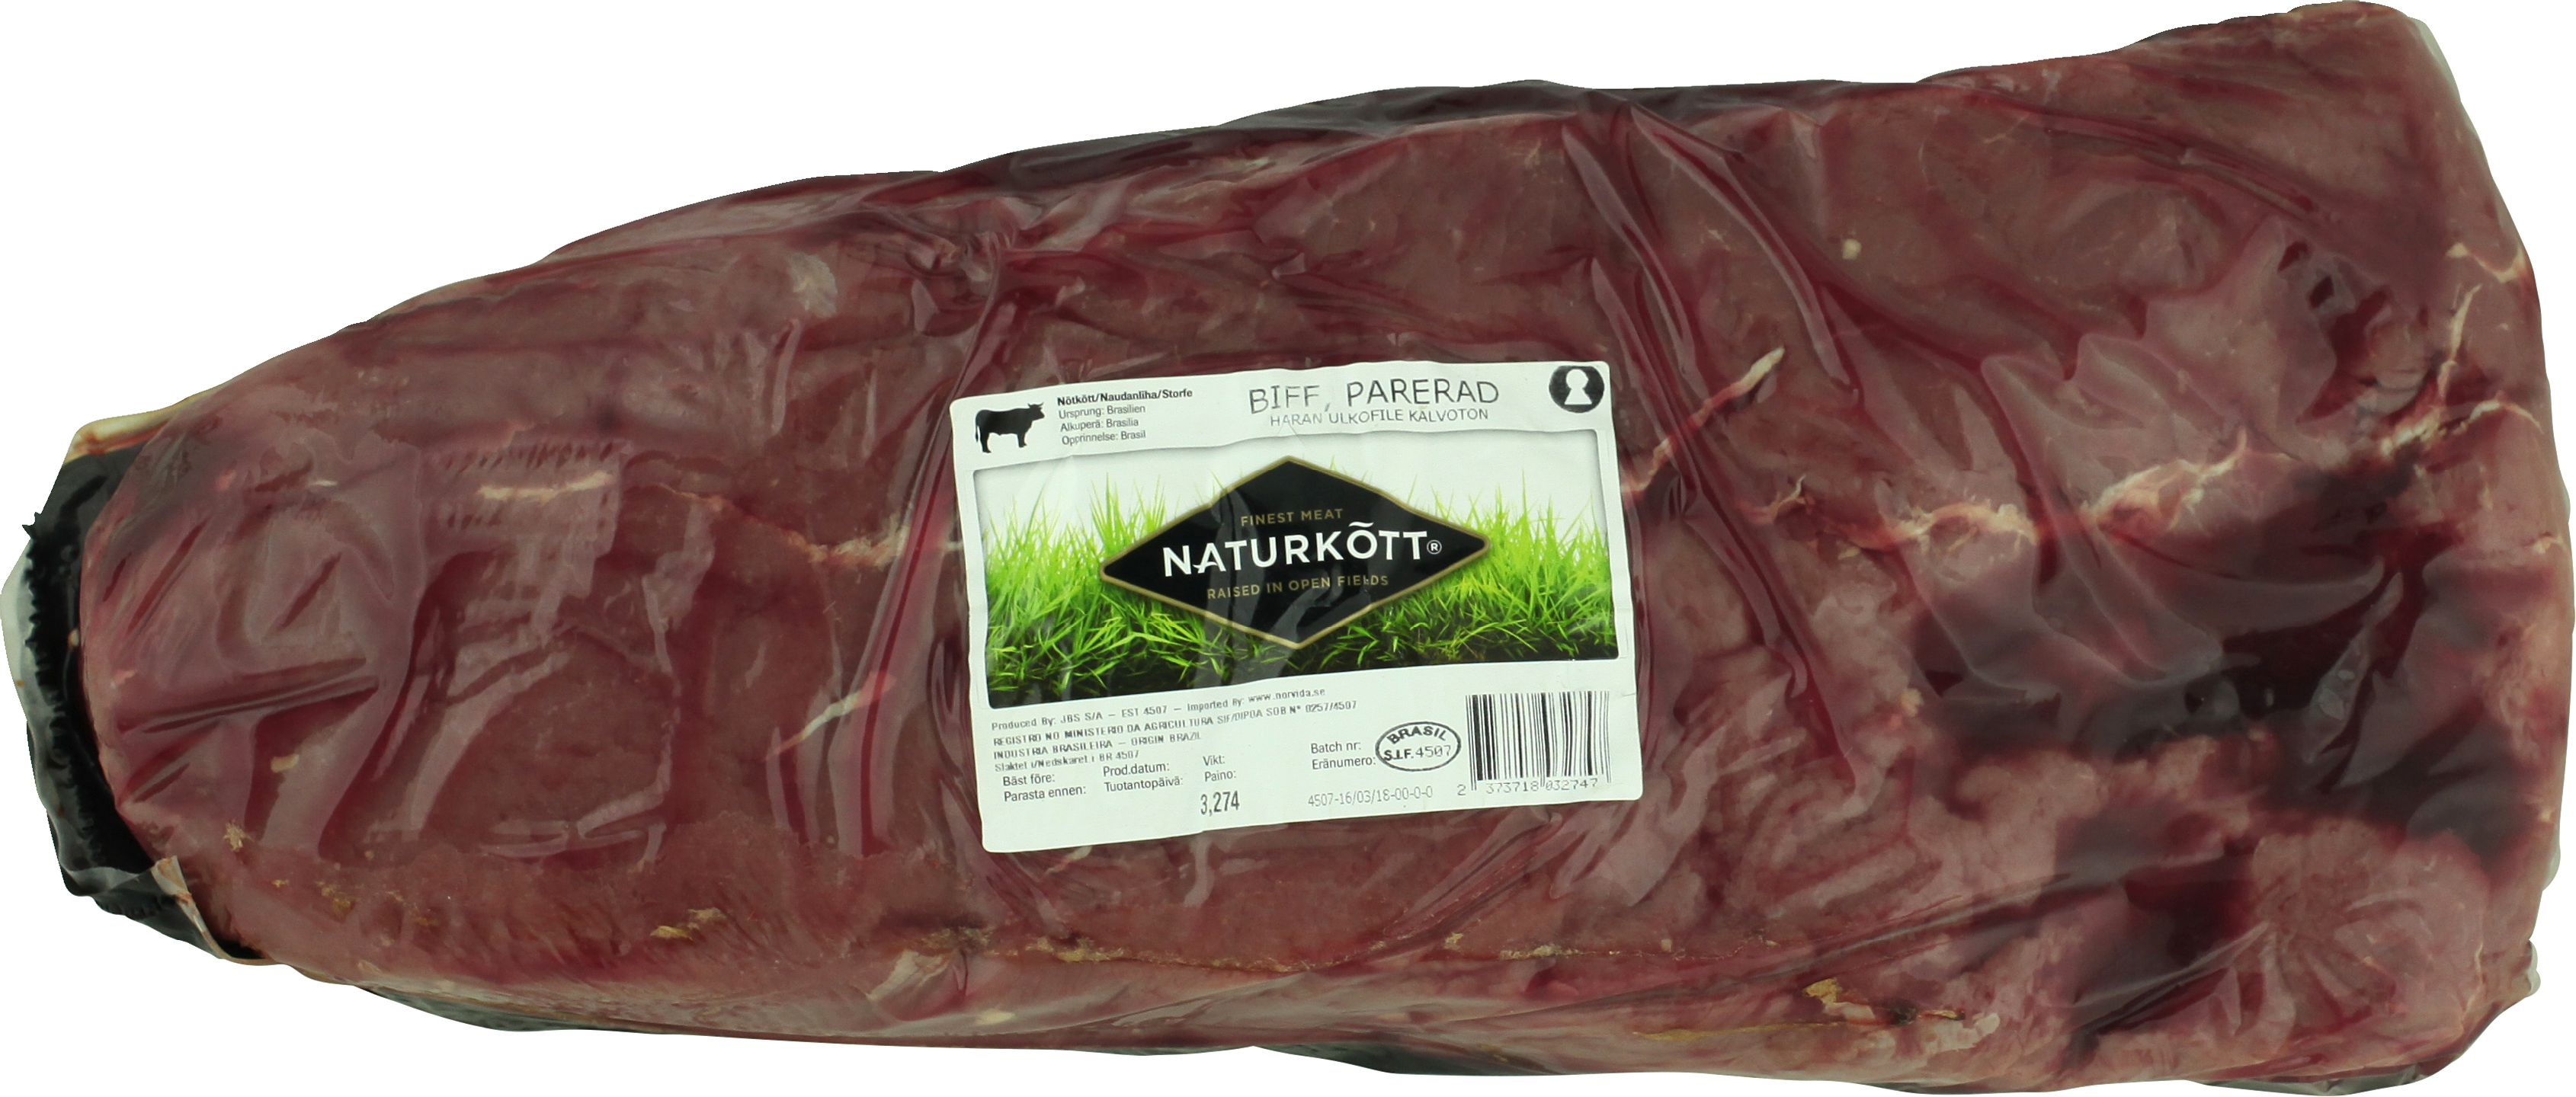 Naturkött Härän ulkofile kalvoton n.3kg tuore